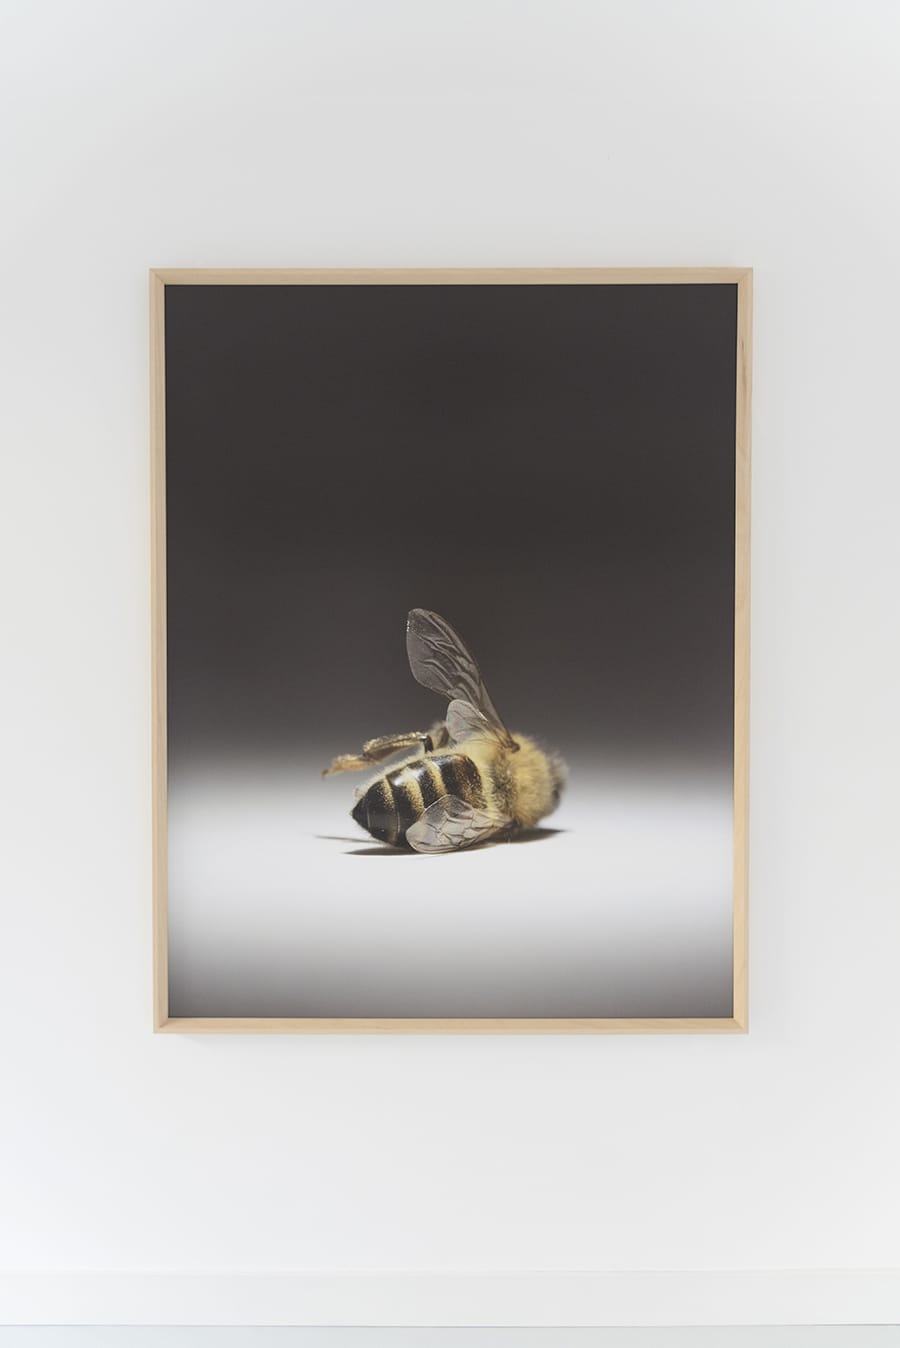 Photographie de grande taille qui représente, en gros plan sur fond gris neutre, une abeille morte de dos, allongée sur le côté